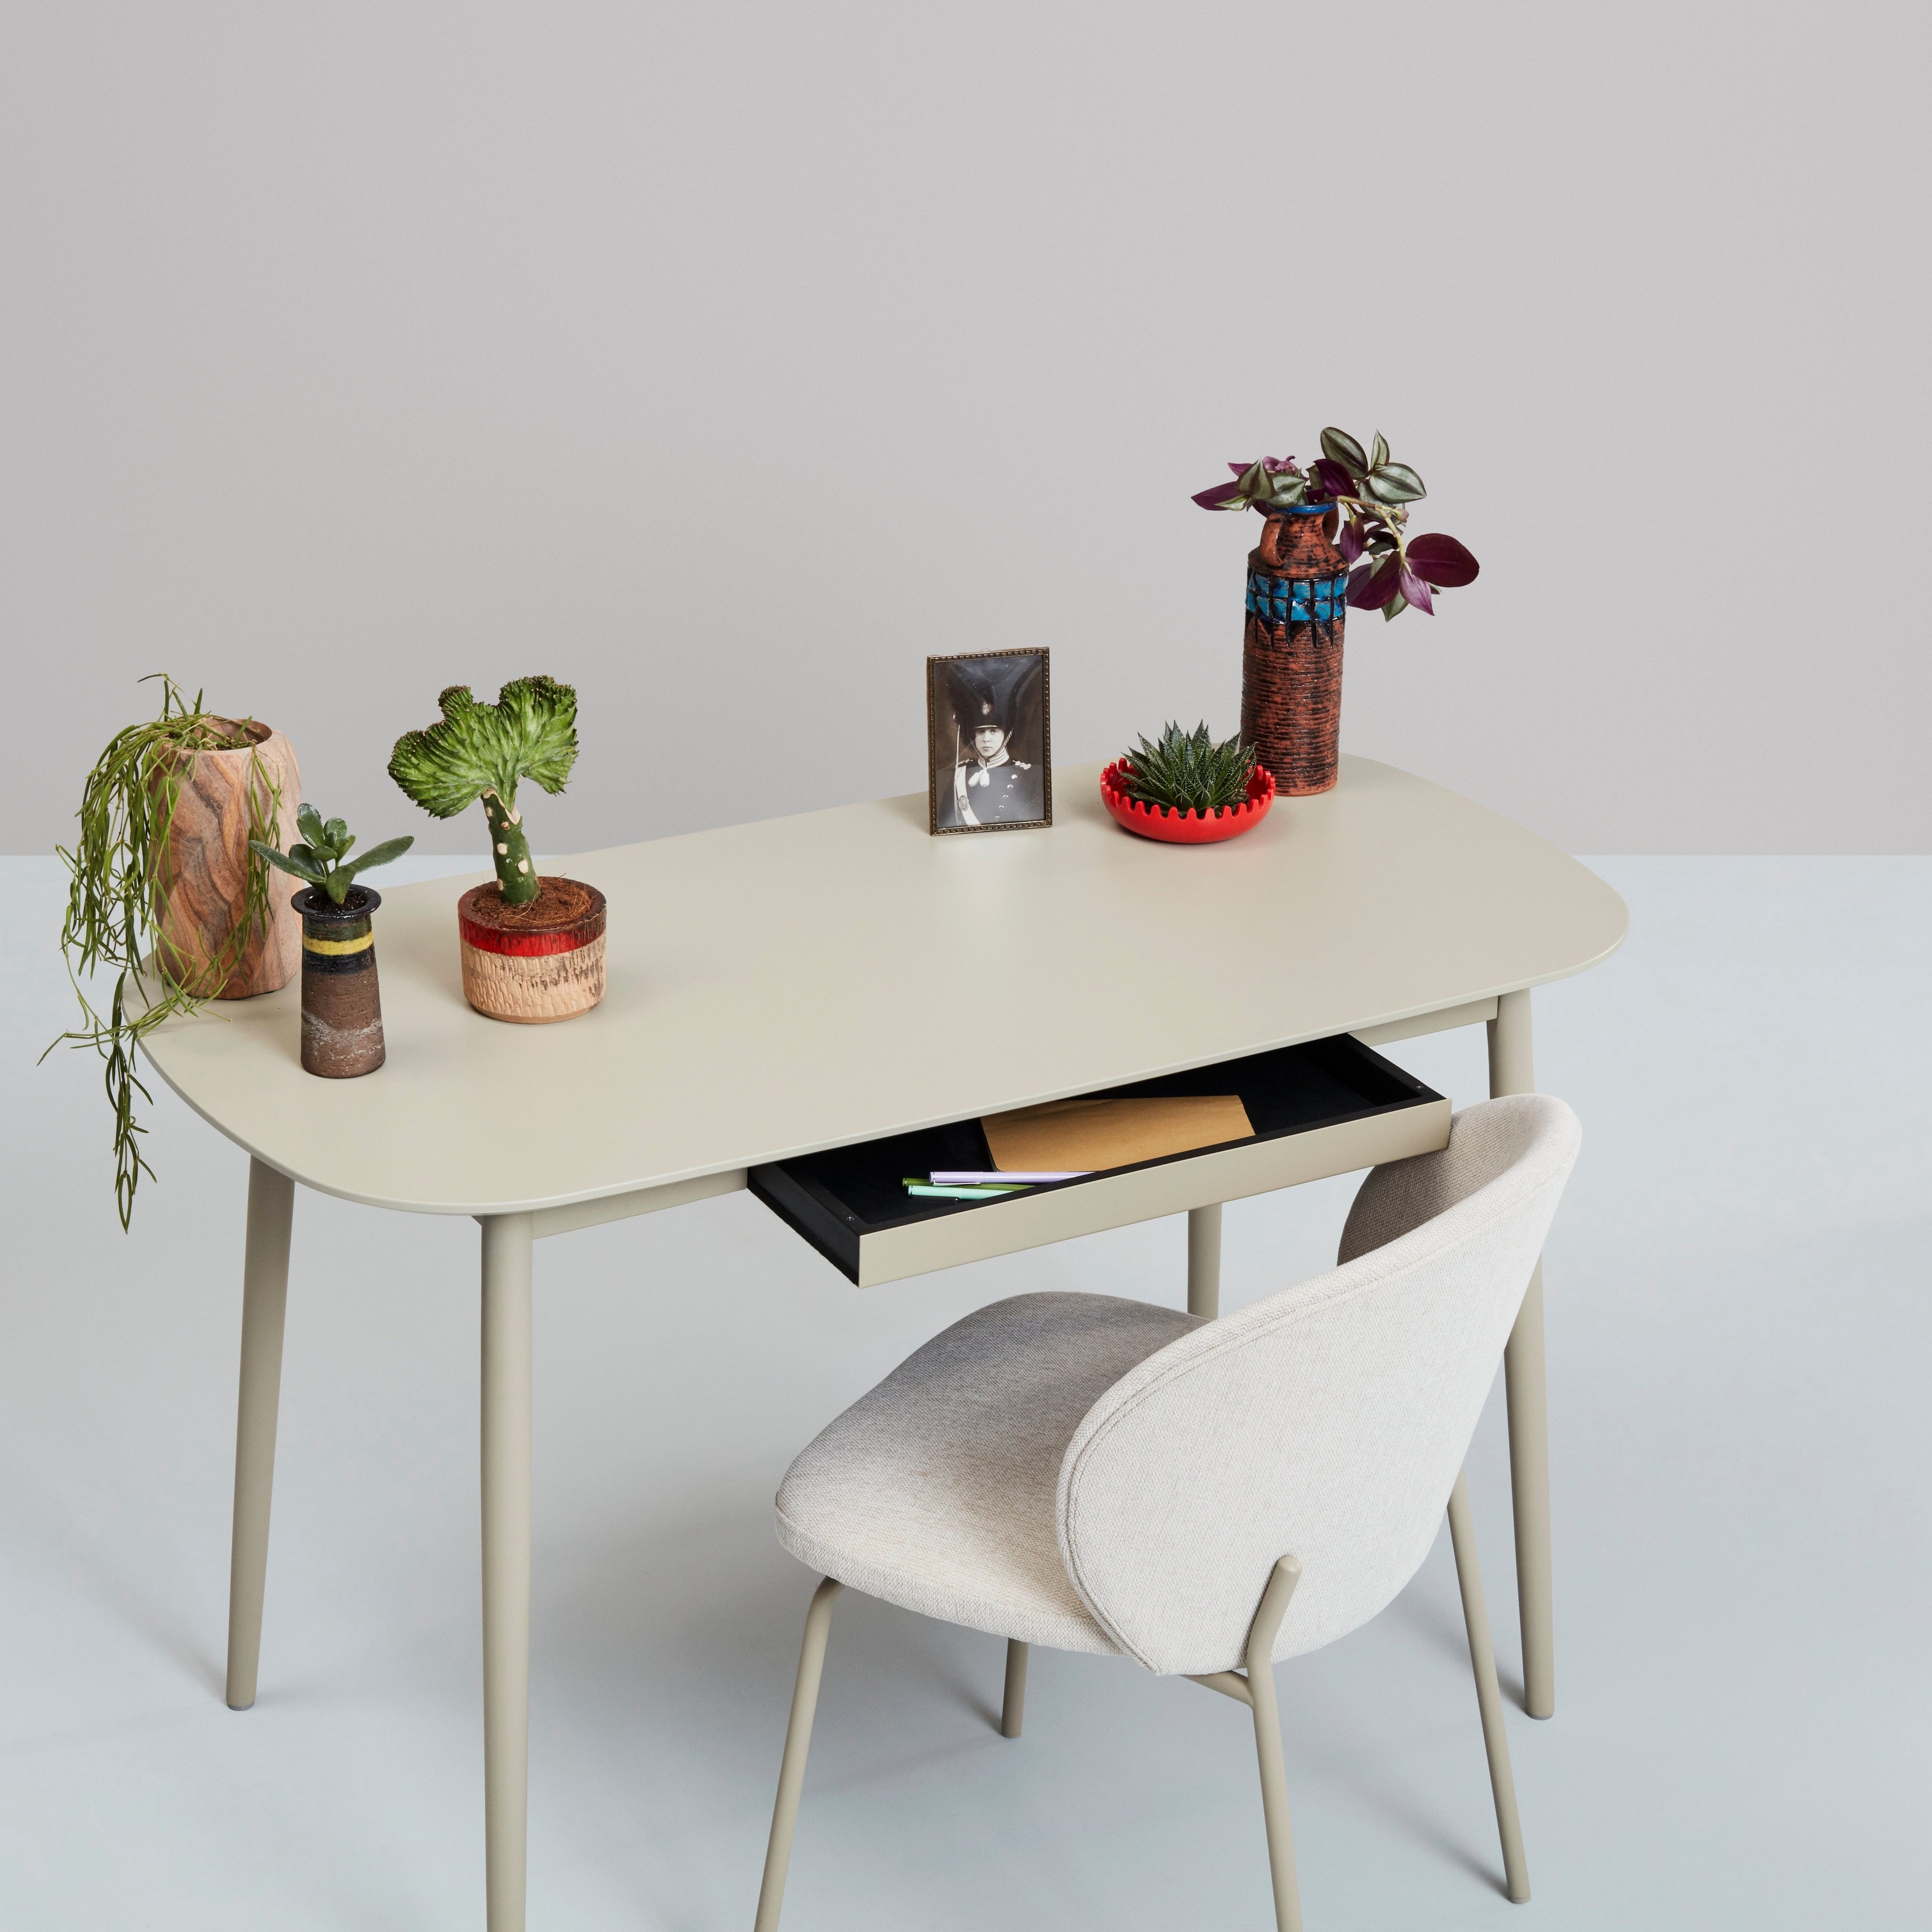 Valkoinen työpöytä, jossa kasveja, koriste-esineitä ja tuoli neutraalia taustaa vasten.